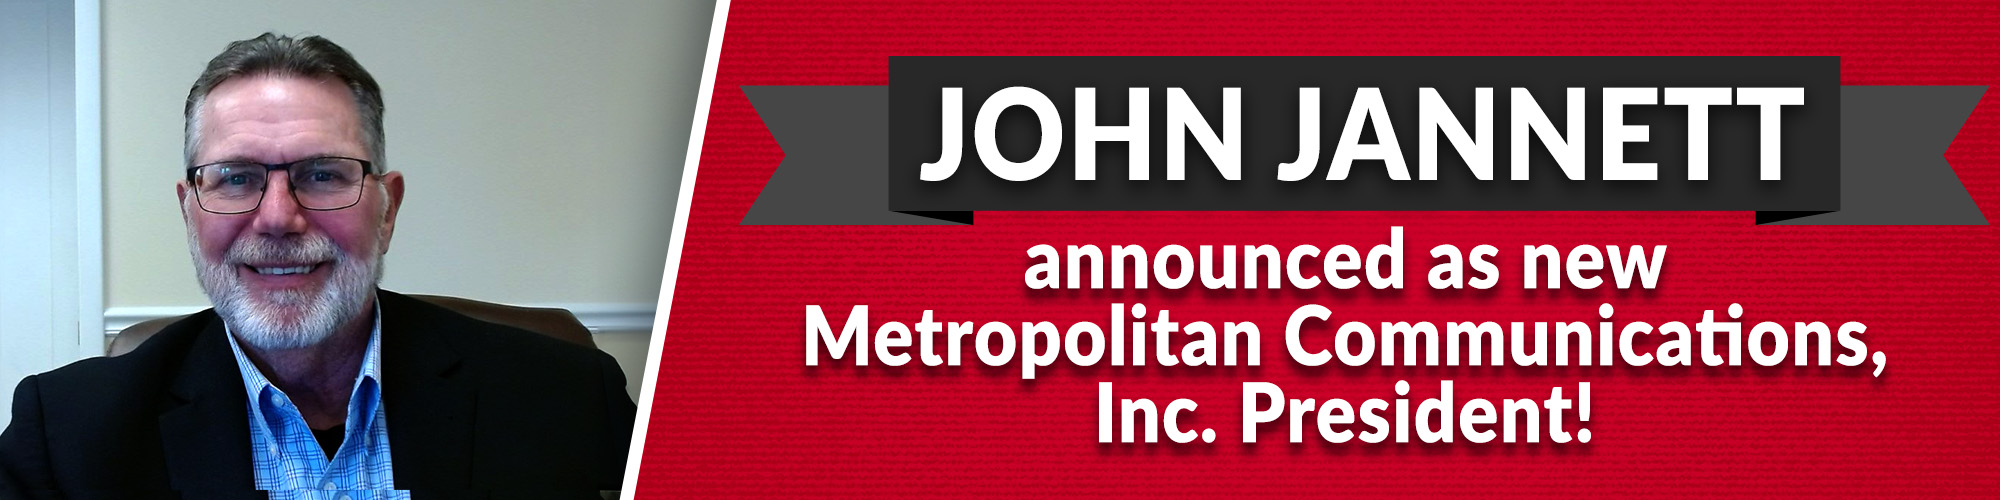 John Jannett new President announcement